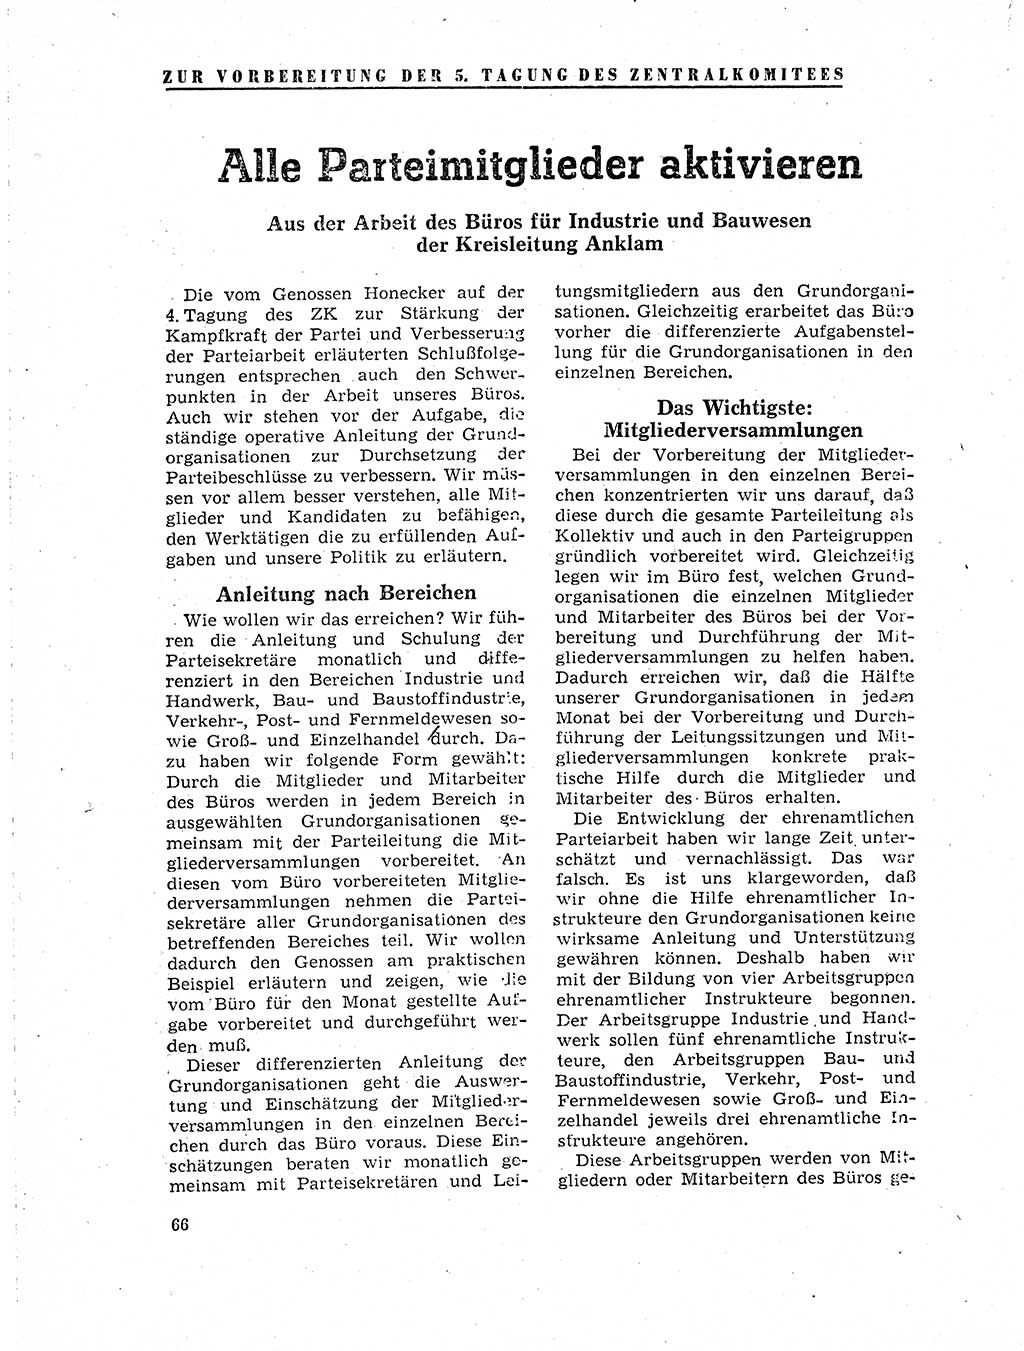 Neuer Weg (NW), Organ des Zentralkomitees (ZK) der SED (Sozialistische Einheitspartei Deutschlands) für Fragen des Parteilebens, 19. Jahrgang [Deutsche Demokratische Republik (DDR)] 1964, Seite 66 (NW ZK SED DDR 1964, S. 66)